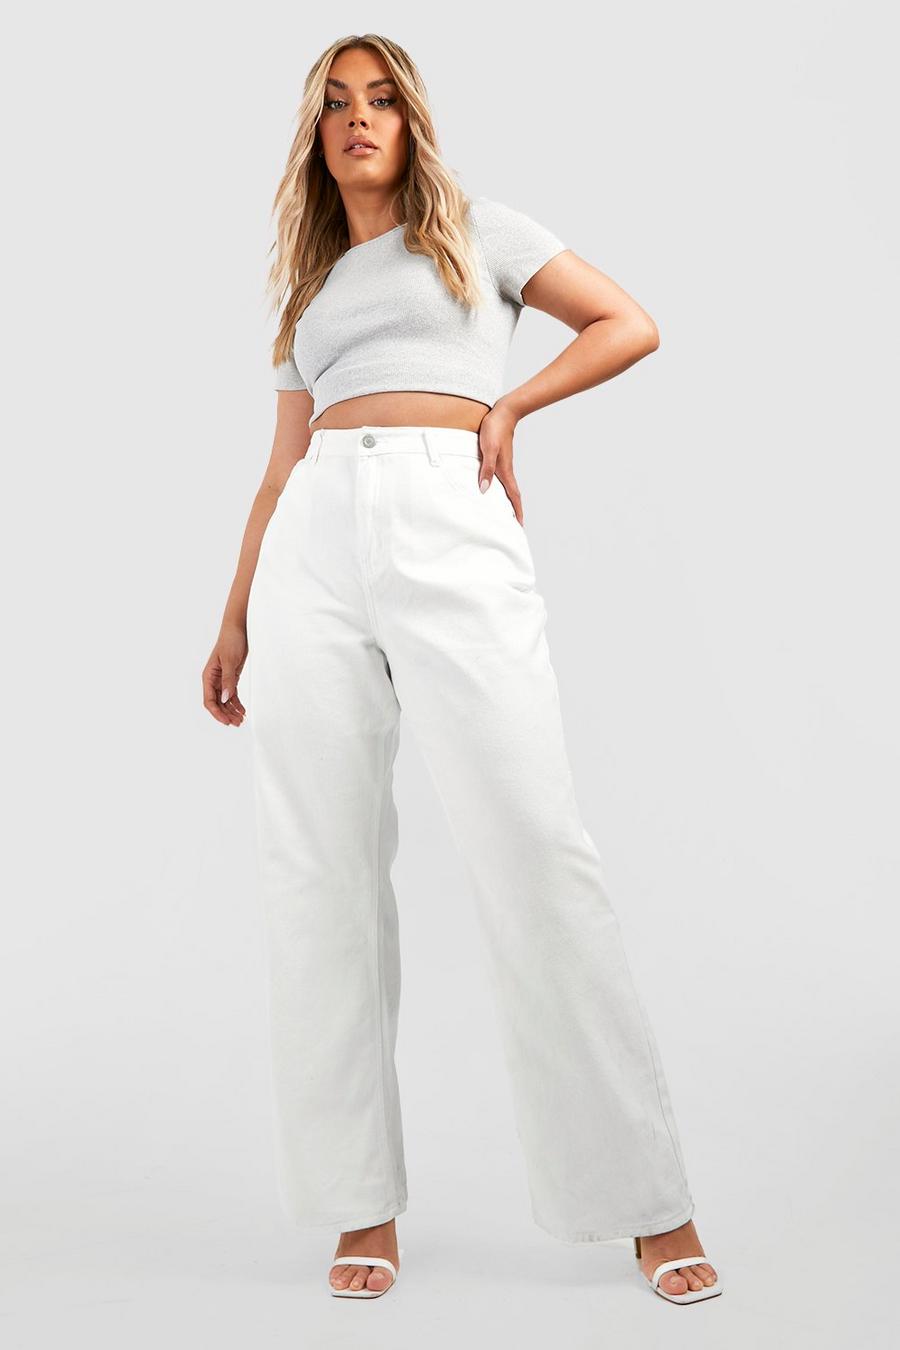 White pleated-skirt asymmetric-hem dress Toni neutri